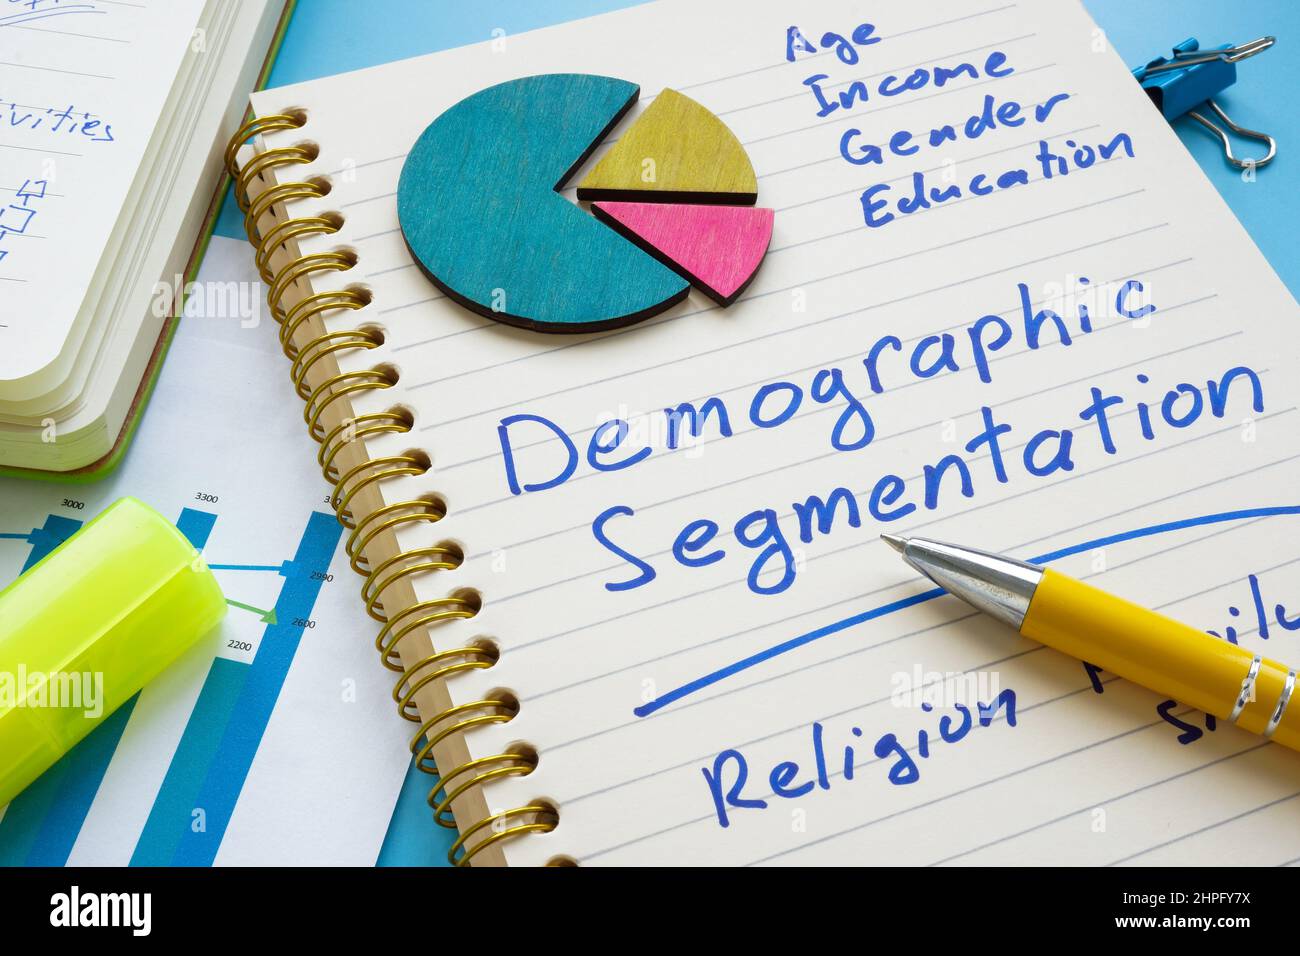 Liste de segmentation démographique sur la page et les documents. Banque D'Images